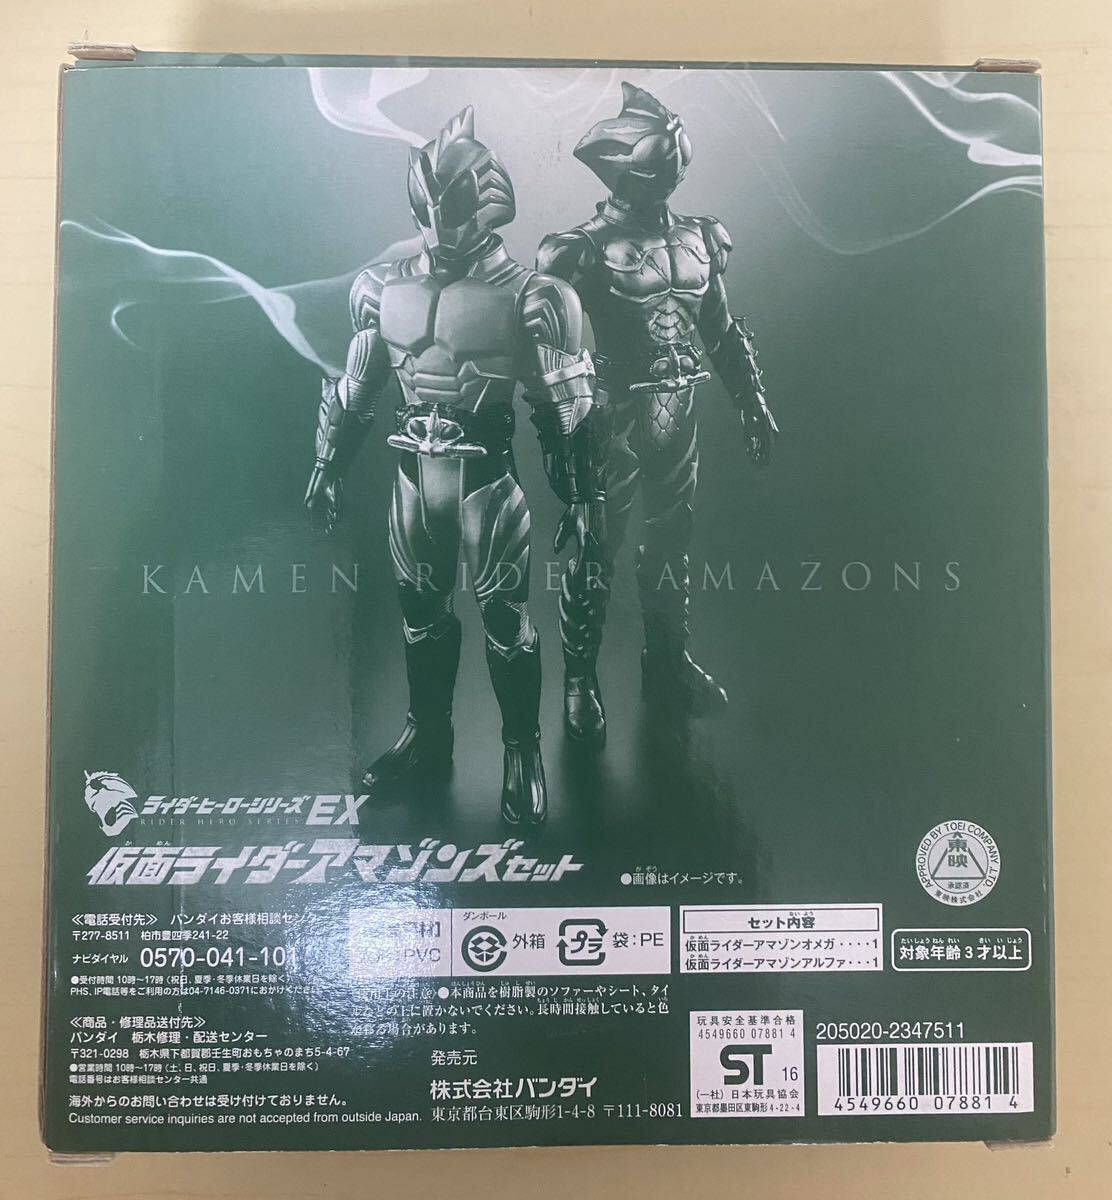 * rider герой серии EX * Kamen Rider Amazon z Alpha & Omega стоимость доставки 600 иен 